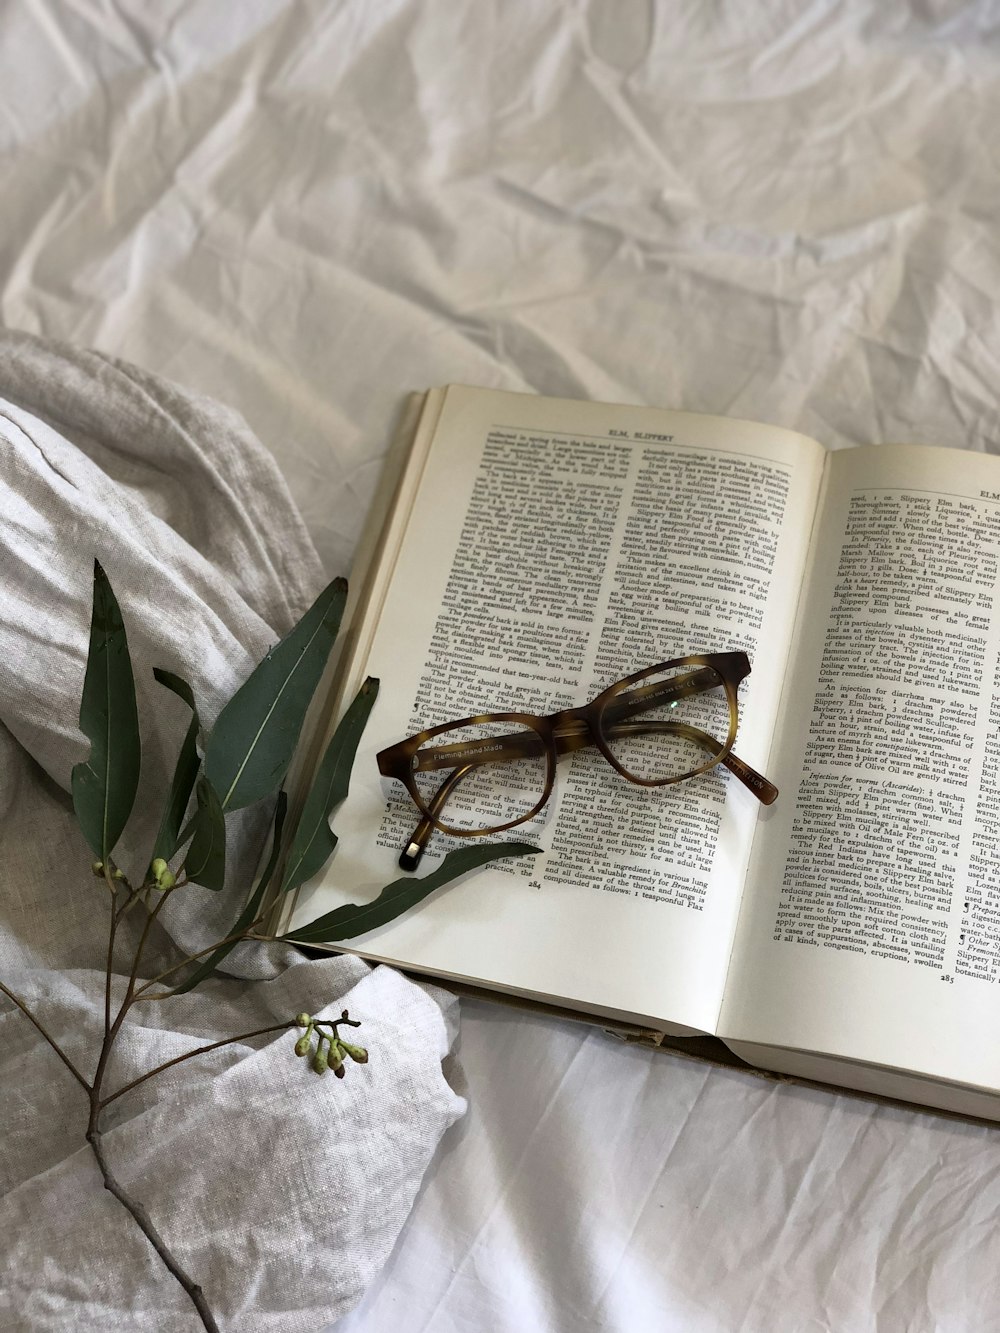 occhiali in cima alla pagina del libro accanto alla pianta a foglia verde